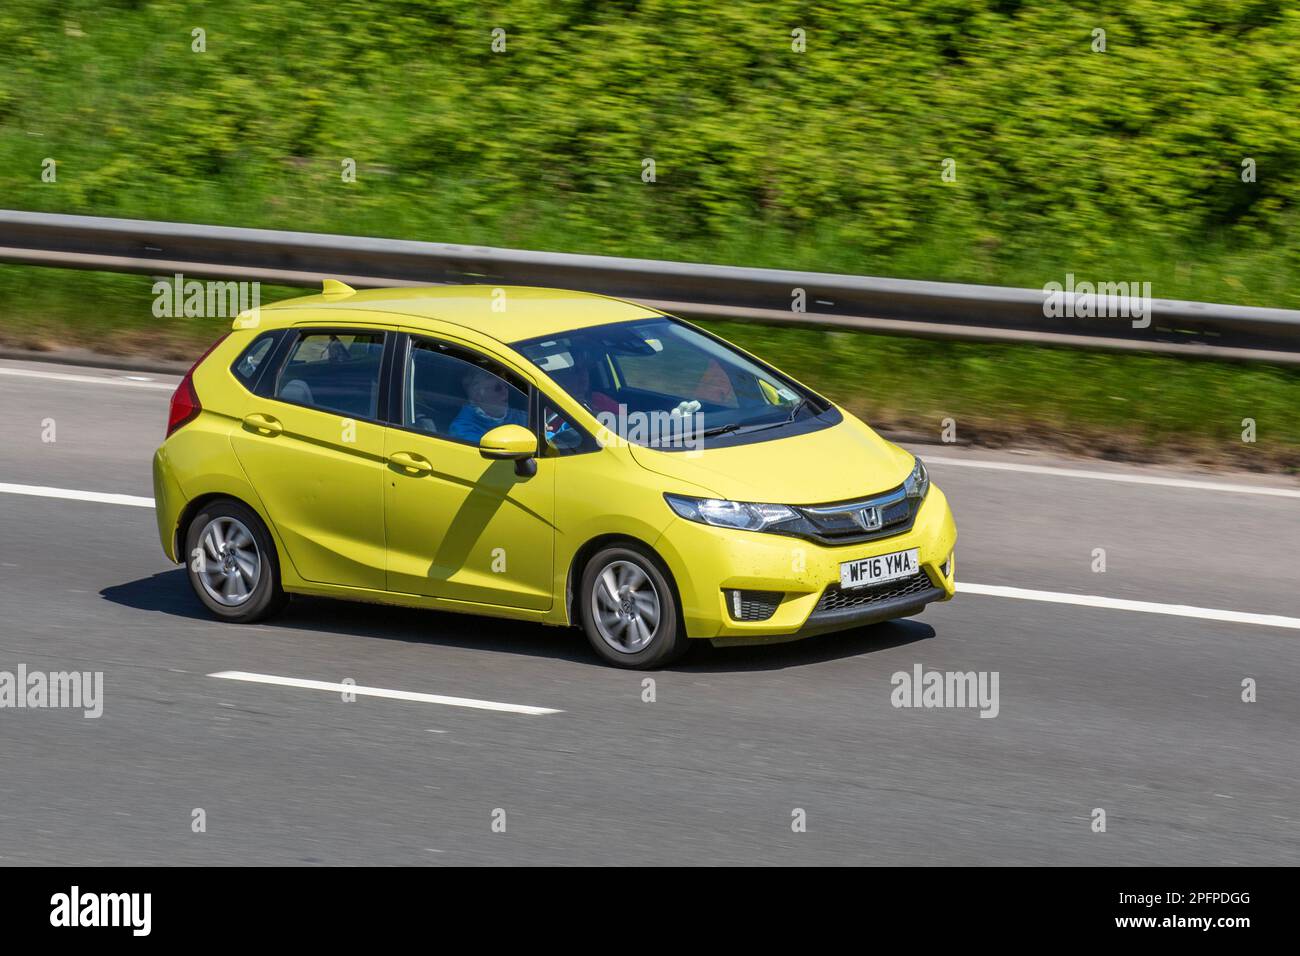 2016 (16) Yellow Honda Jazz SE I-VTEC; travelling on the M61 motorway, UK Stock Photo